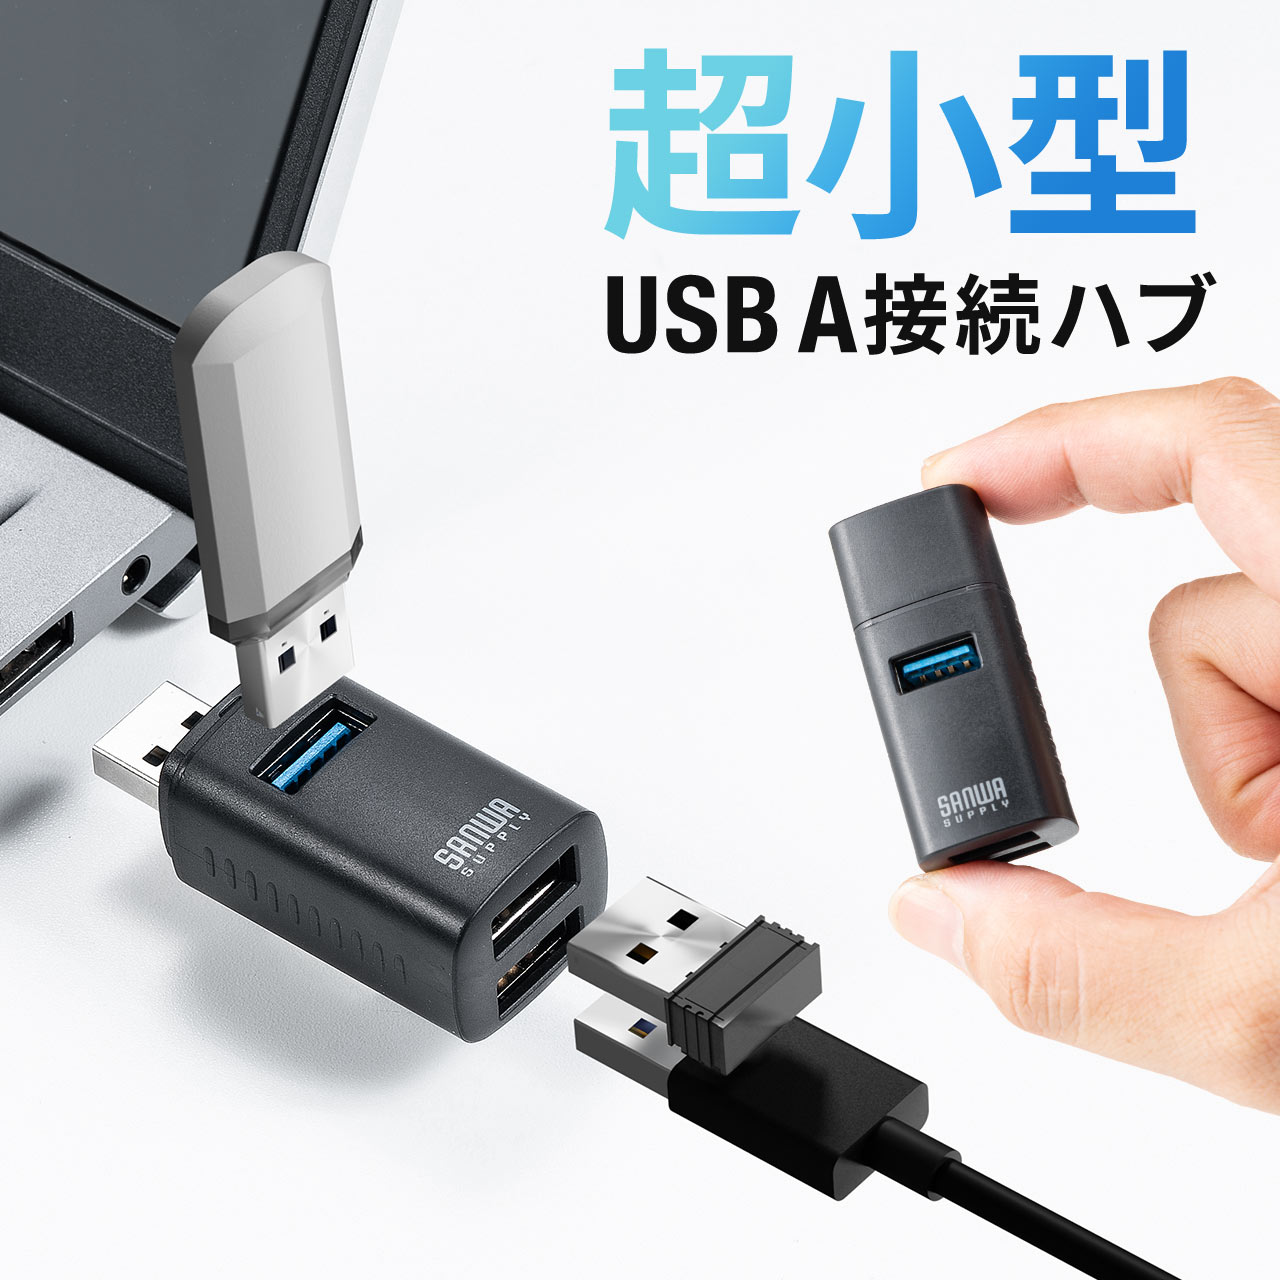 USBハブ 3ポート コンパクト 小型 USB A USB3.0/USB2.0 コンボハブ 軽量 軽い バスパワー 持ち運び ポート 増設 拡張 直差し 400-HUBA17BK